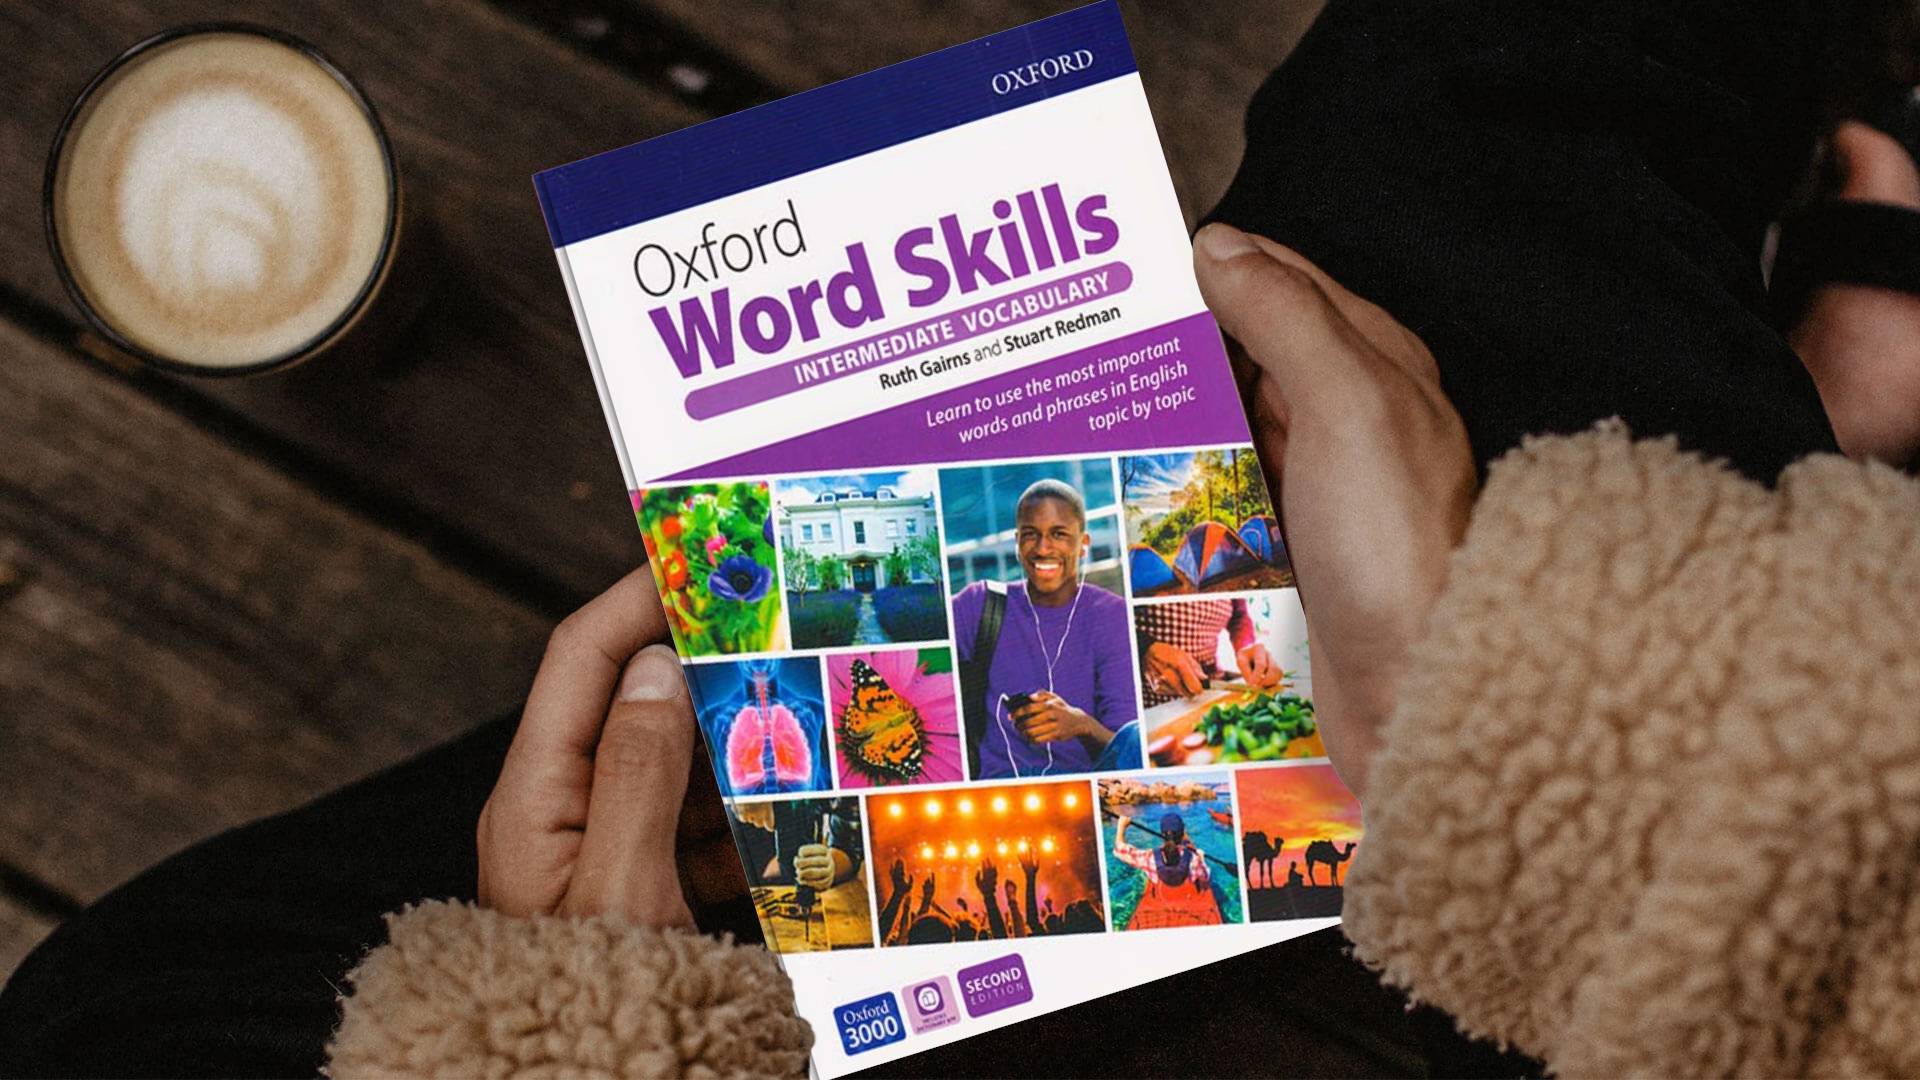 خرید کتاب زبان | فروشگاه اینترنتی کتاب زبان | oxford word skills Intermediate second edition | آکسفورد ورد اسکیلز اینترمدیت ویرایش دوم